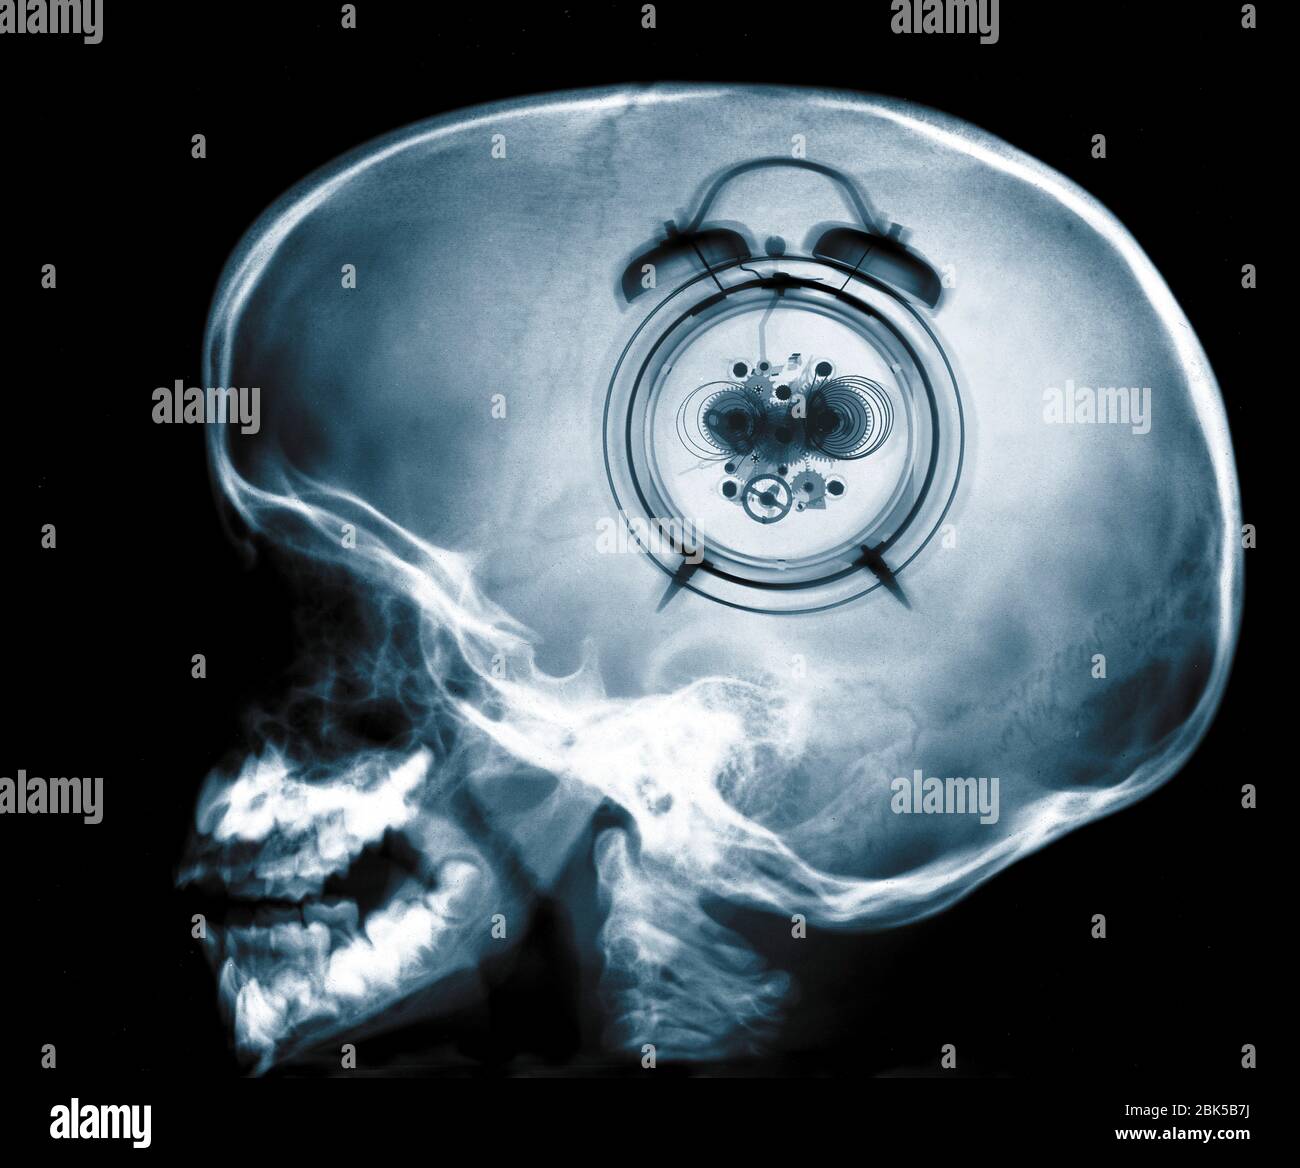 Human skull and clock, X-ray. Stock Photo